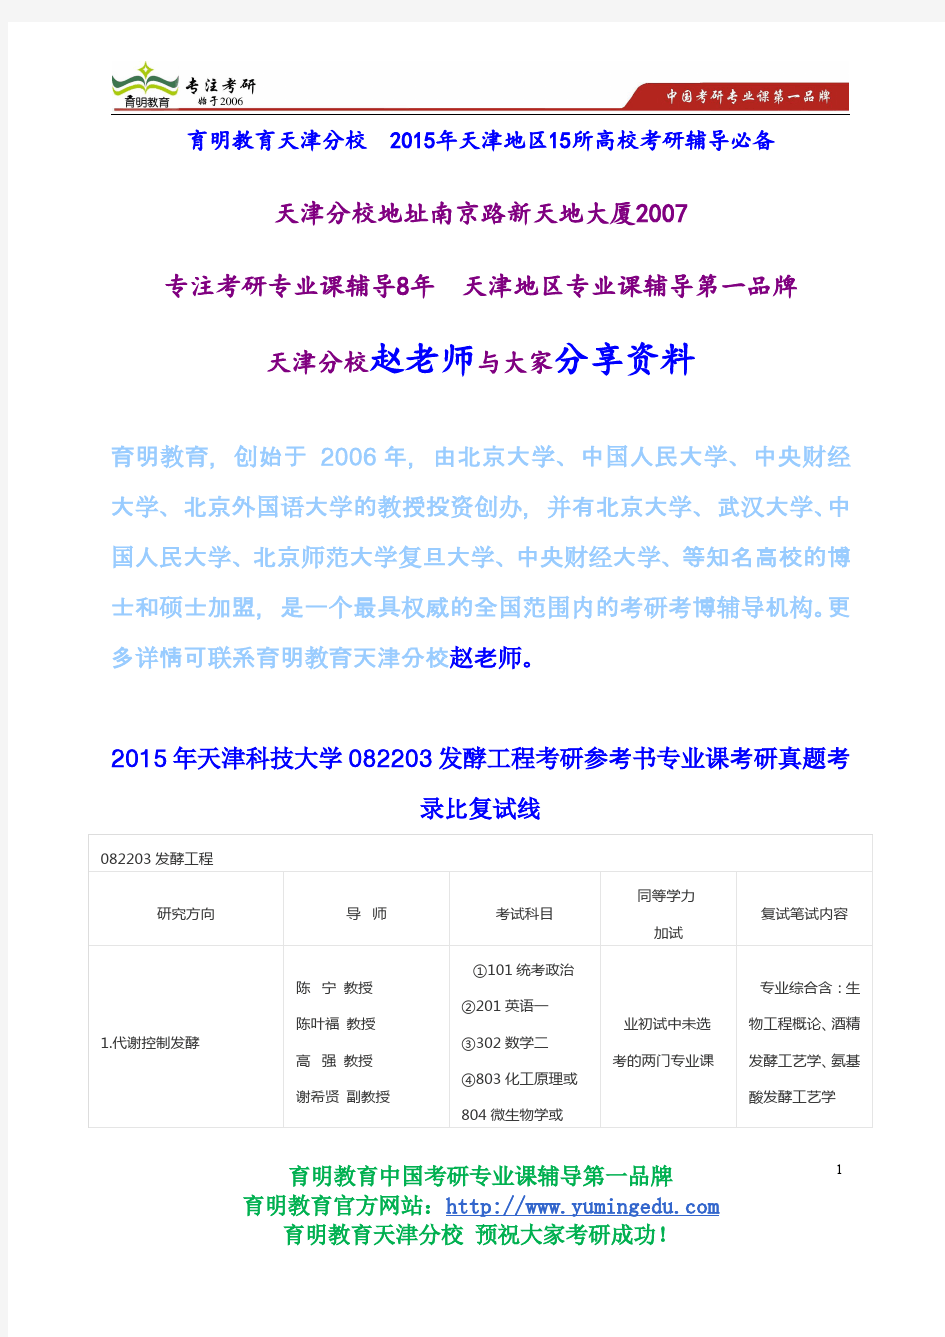 2015年天津科技大学082203发酵工程考研参考书专业课考研真题考录比复试线